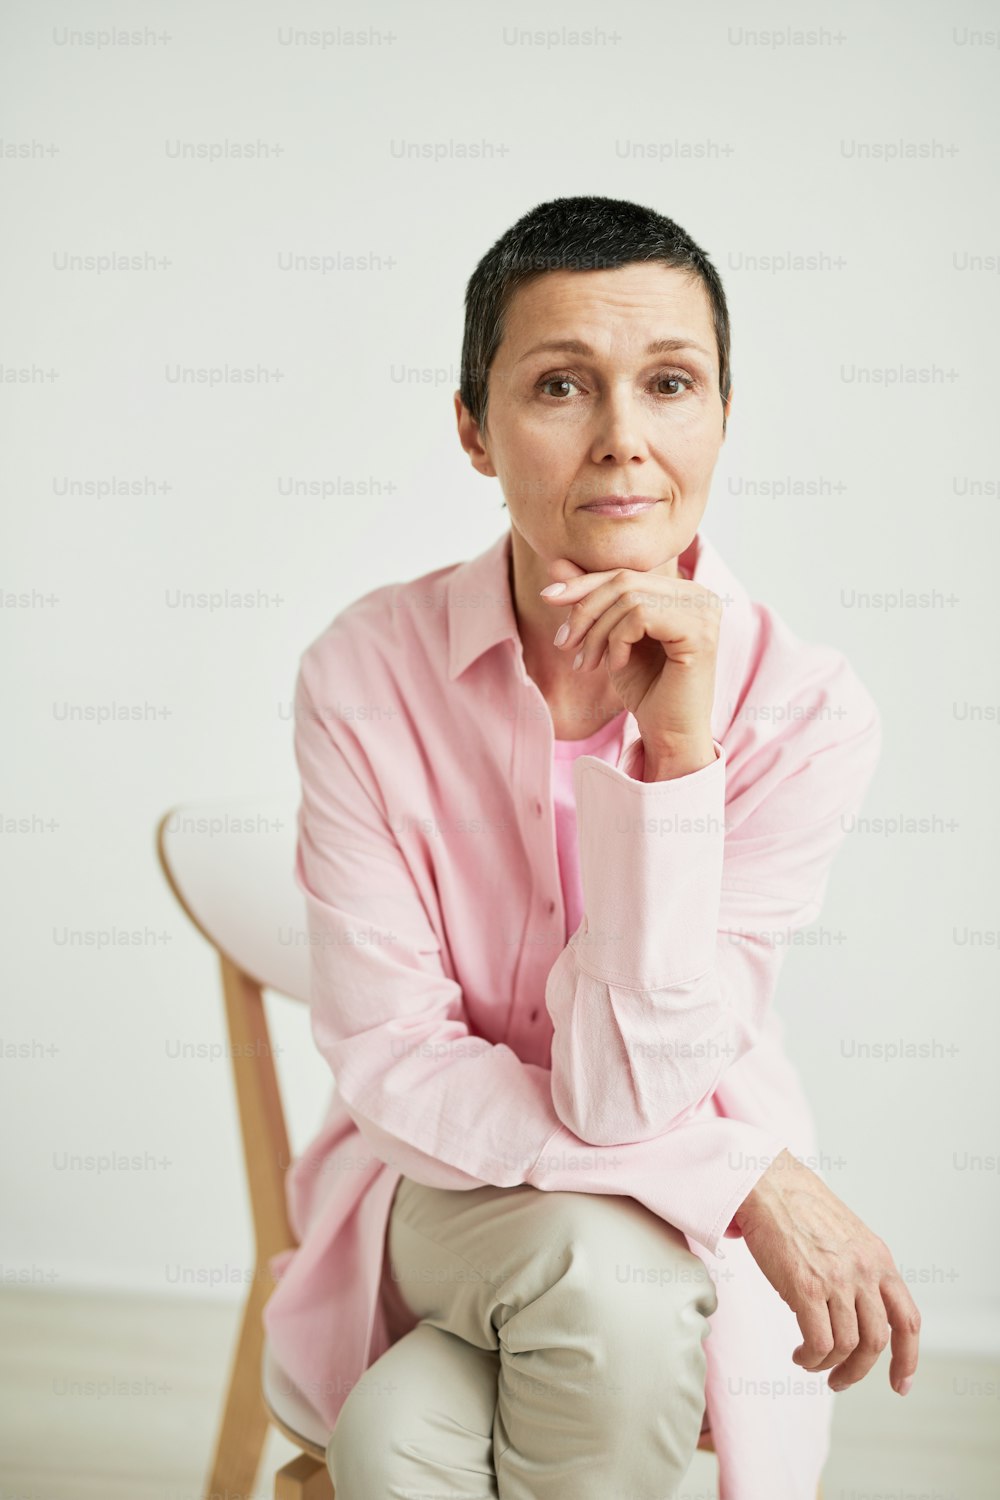 Minimales Porträt einer selbstbewussten, reifen Geschäftsfrau, die in die Kamera schaut, während sie ein rosa Hemd trägt